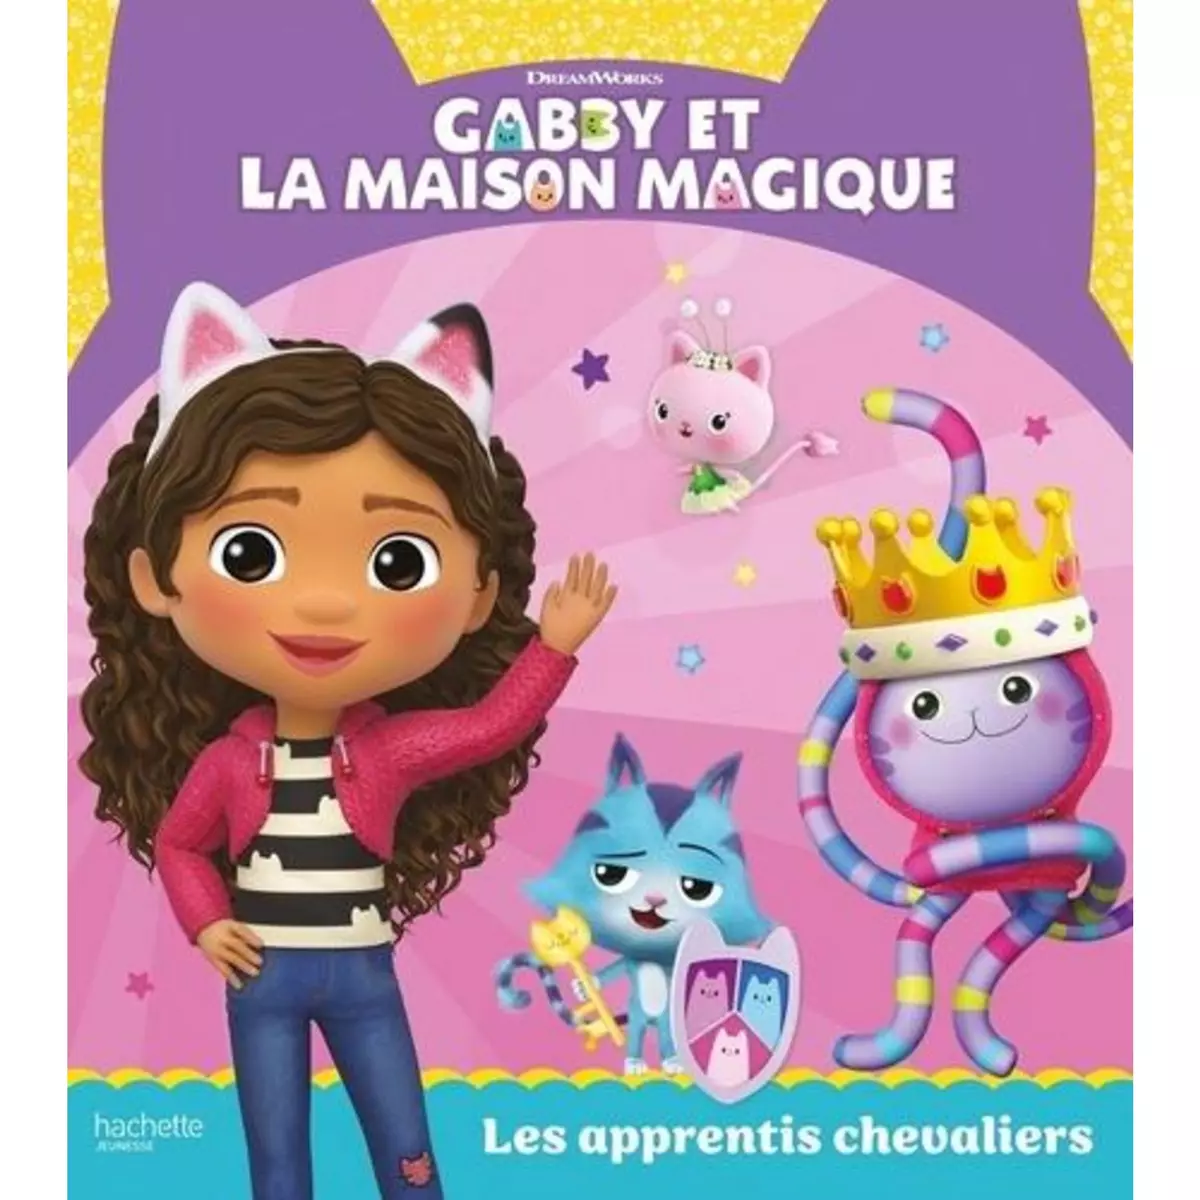  GABBY ET LA MAISON MAGIQUE : LES APPRENTIS CHEVALIERS, DreamWorks